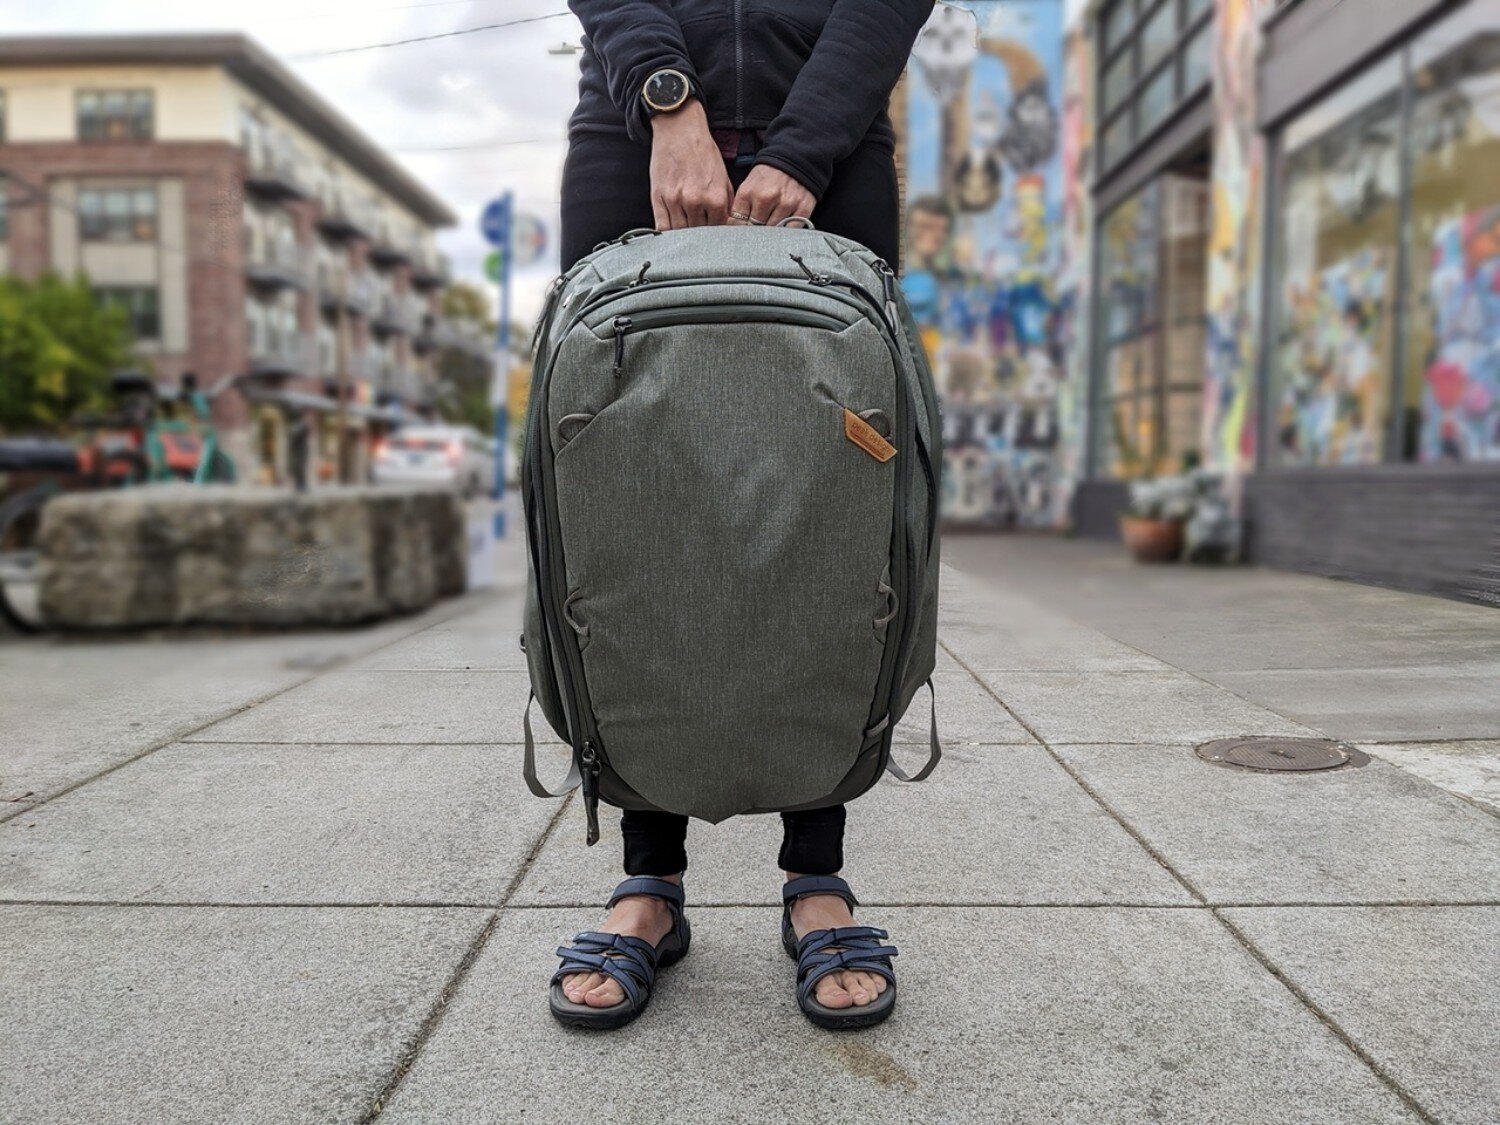 backpacks for work travel